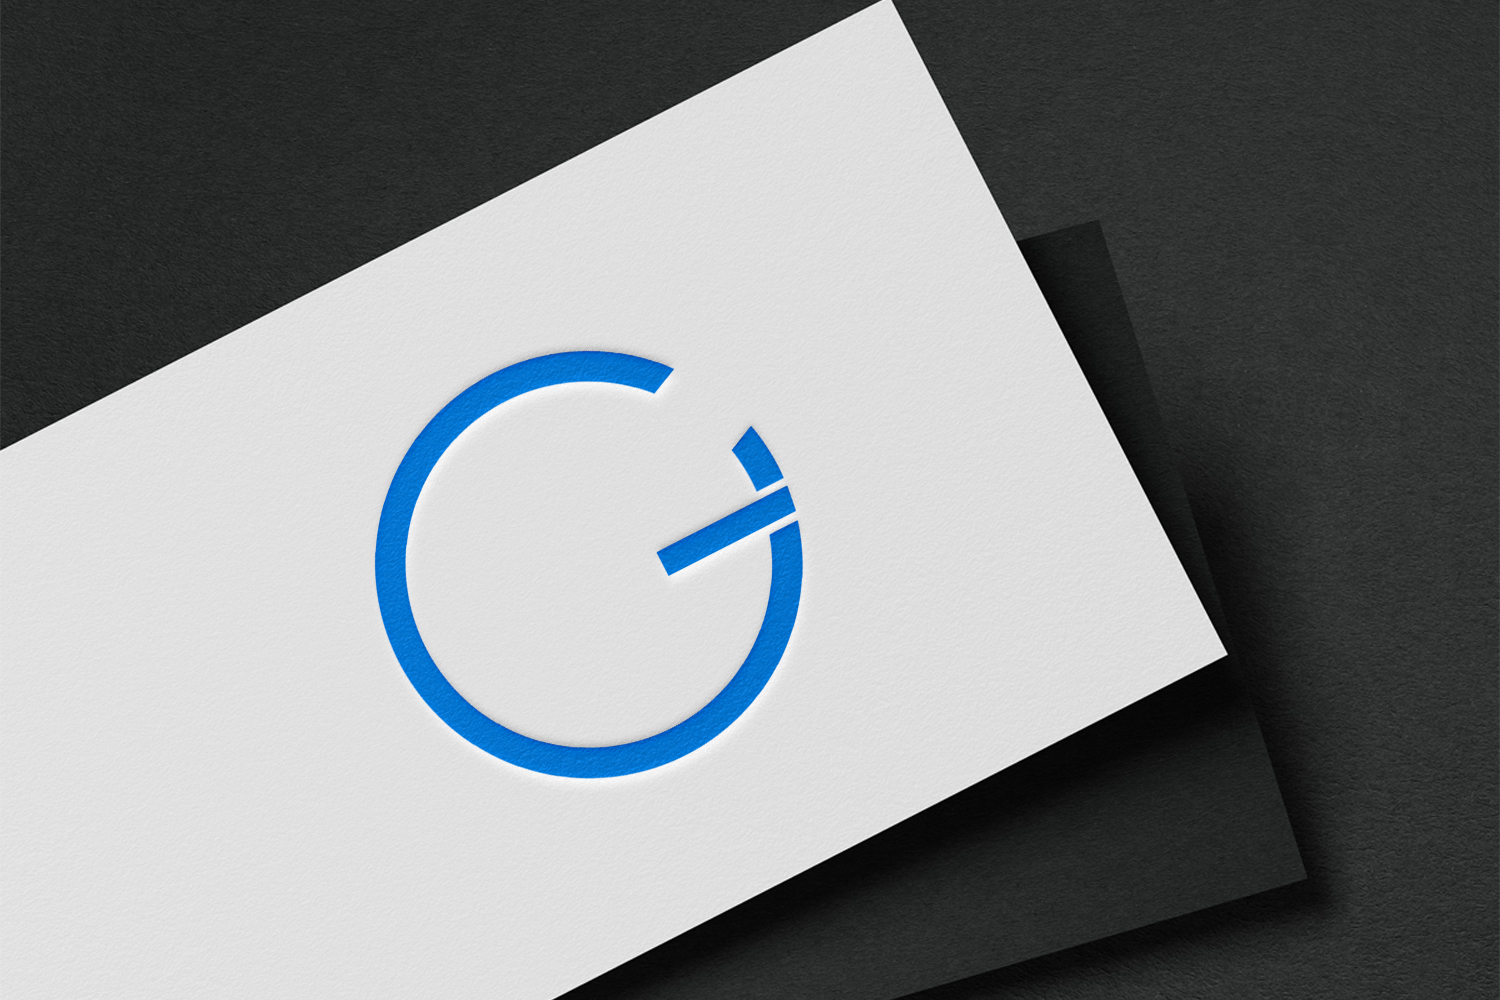 CG Letter Technology Logo Design Template pinterest image.